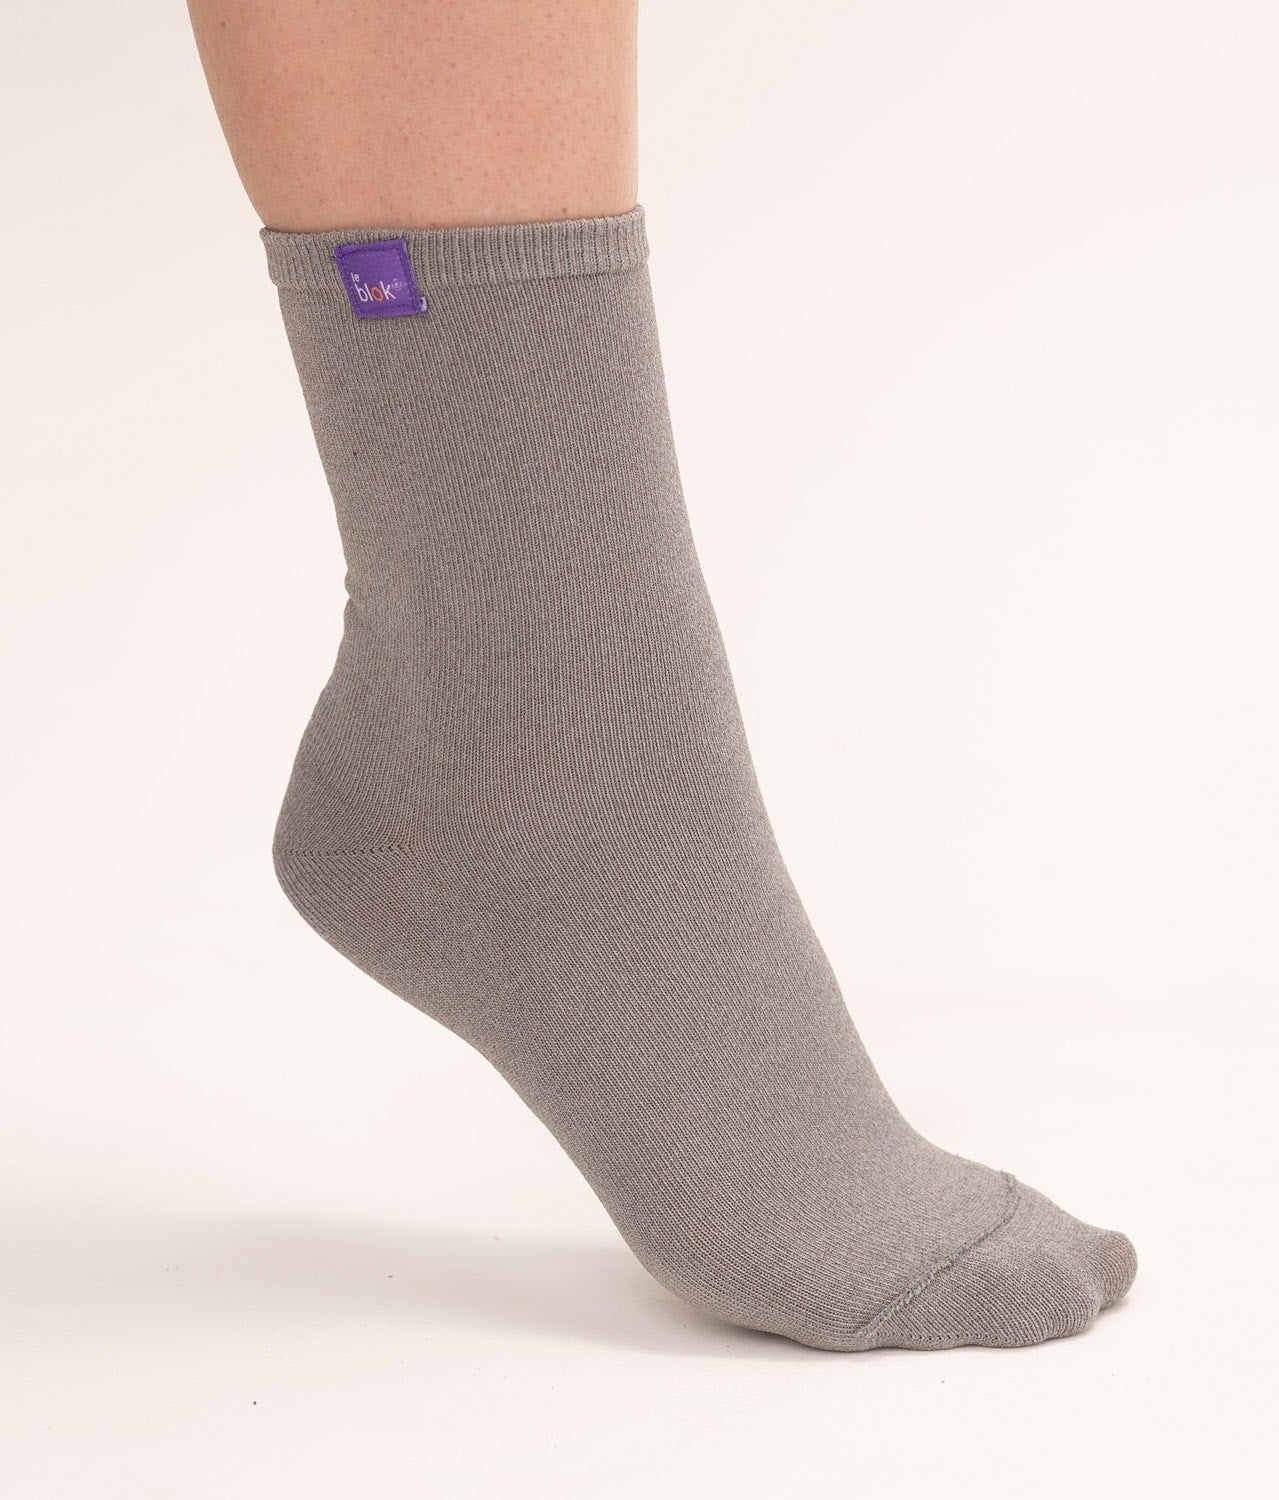 EMF Shielding Socks from Leblok®